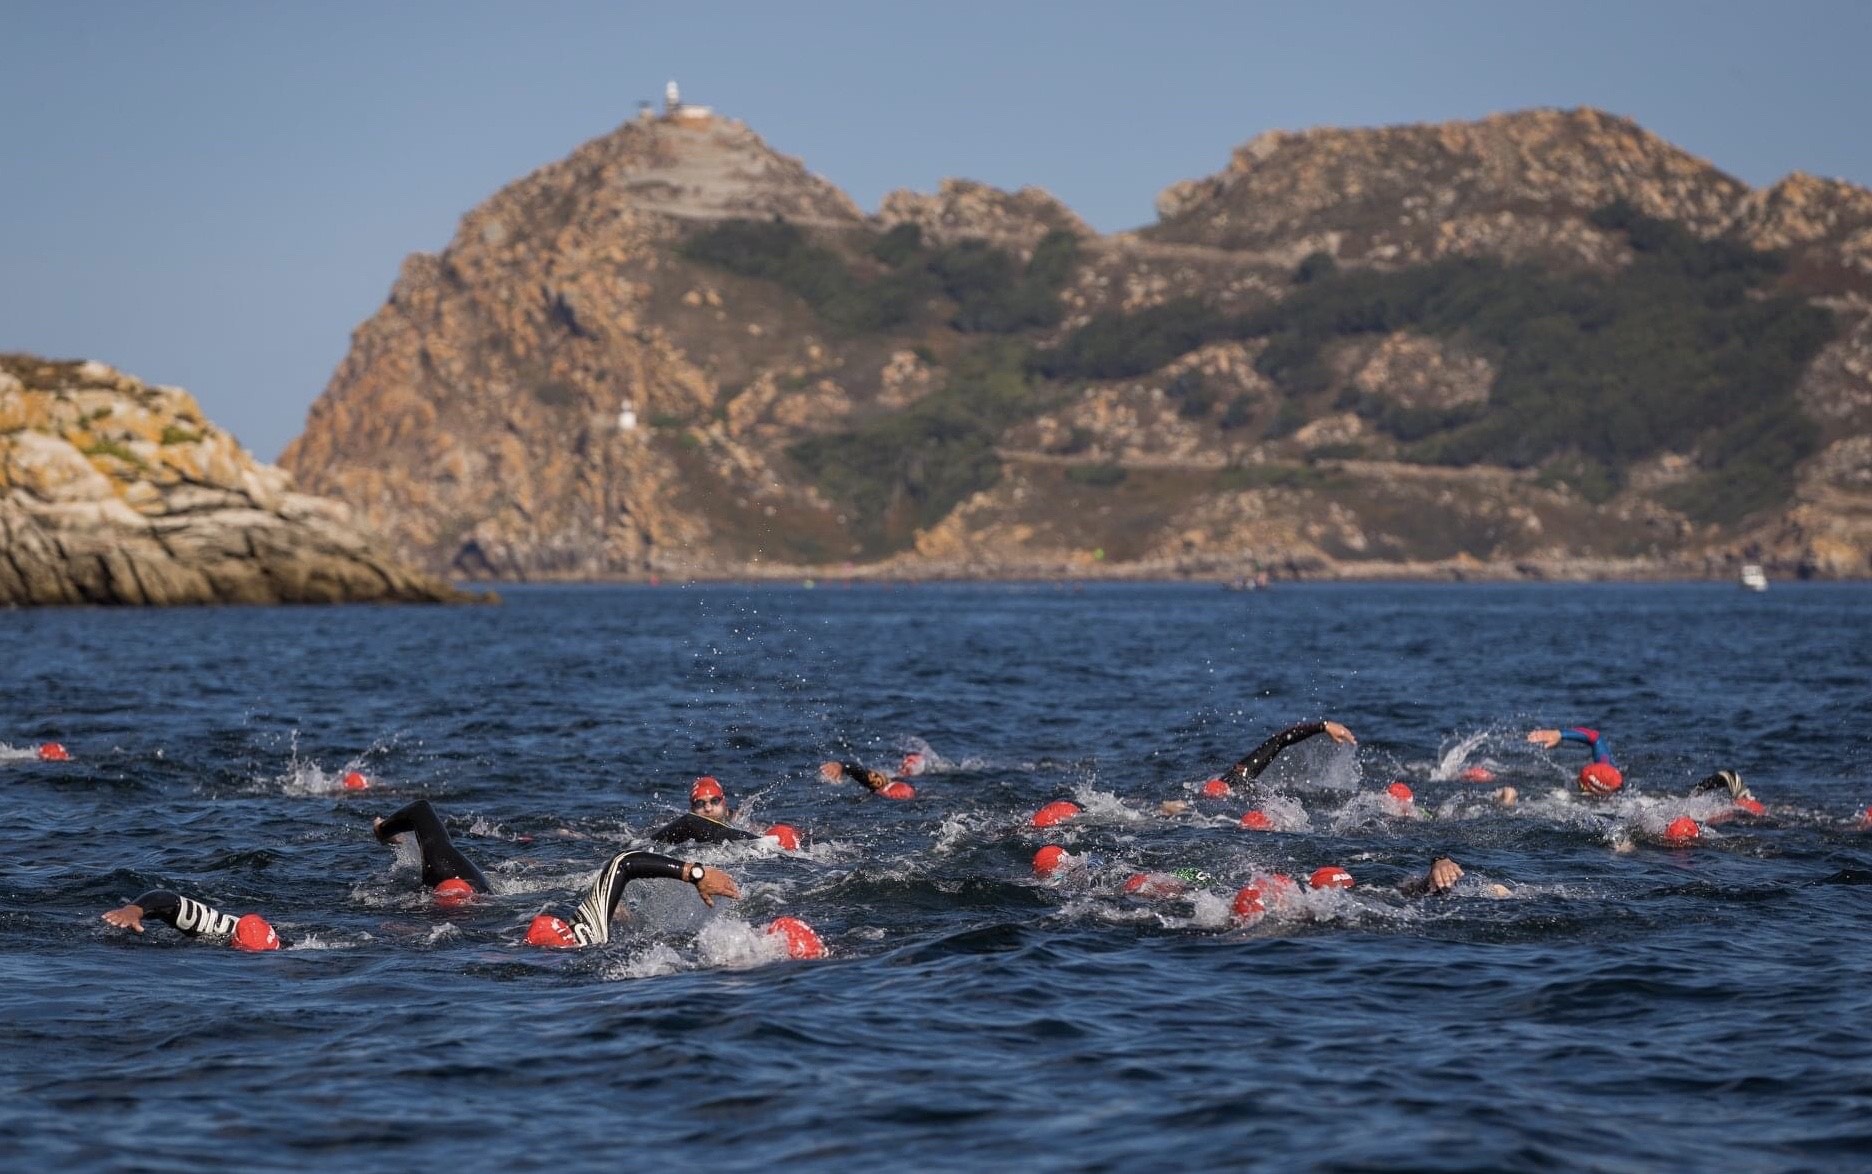 159 nadadores recorrerán este sábado los 15 kilómetros ente Cíes y Baiona